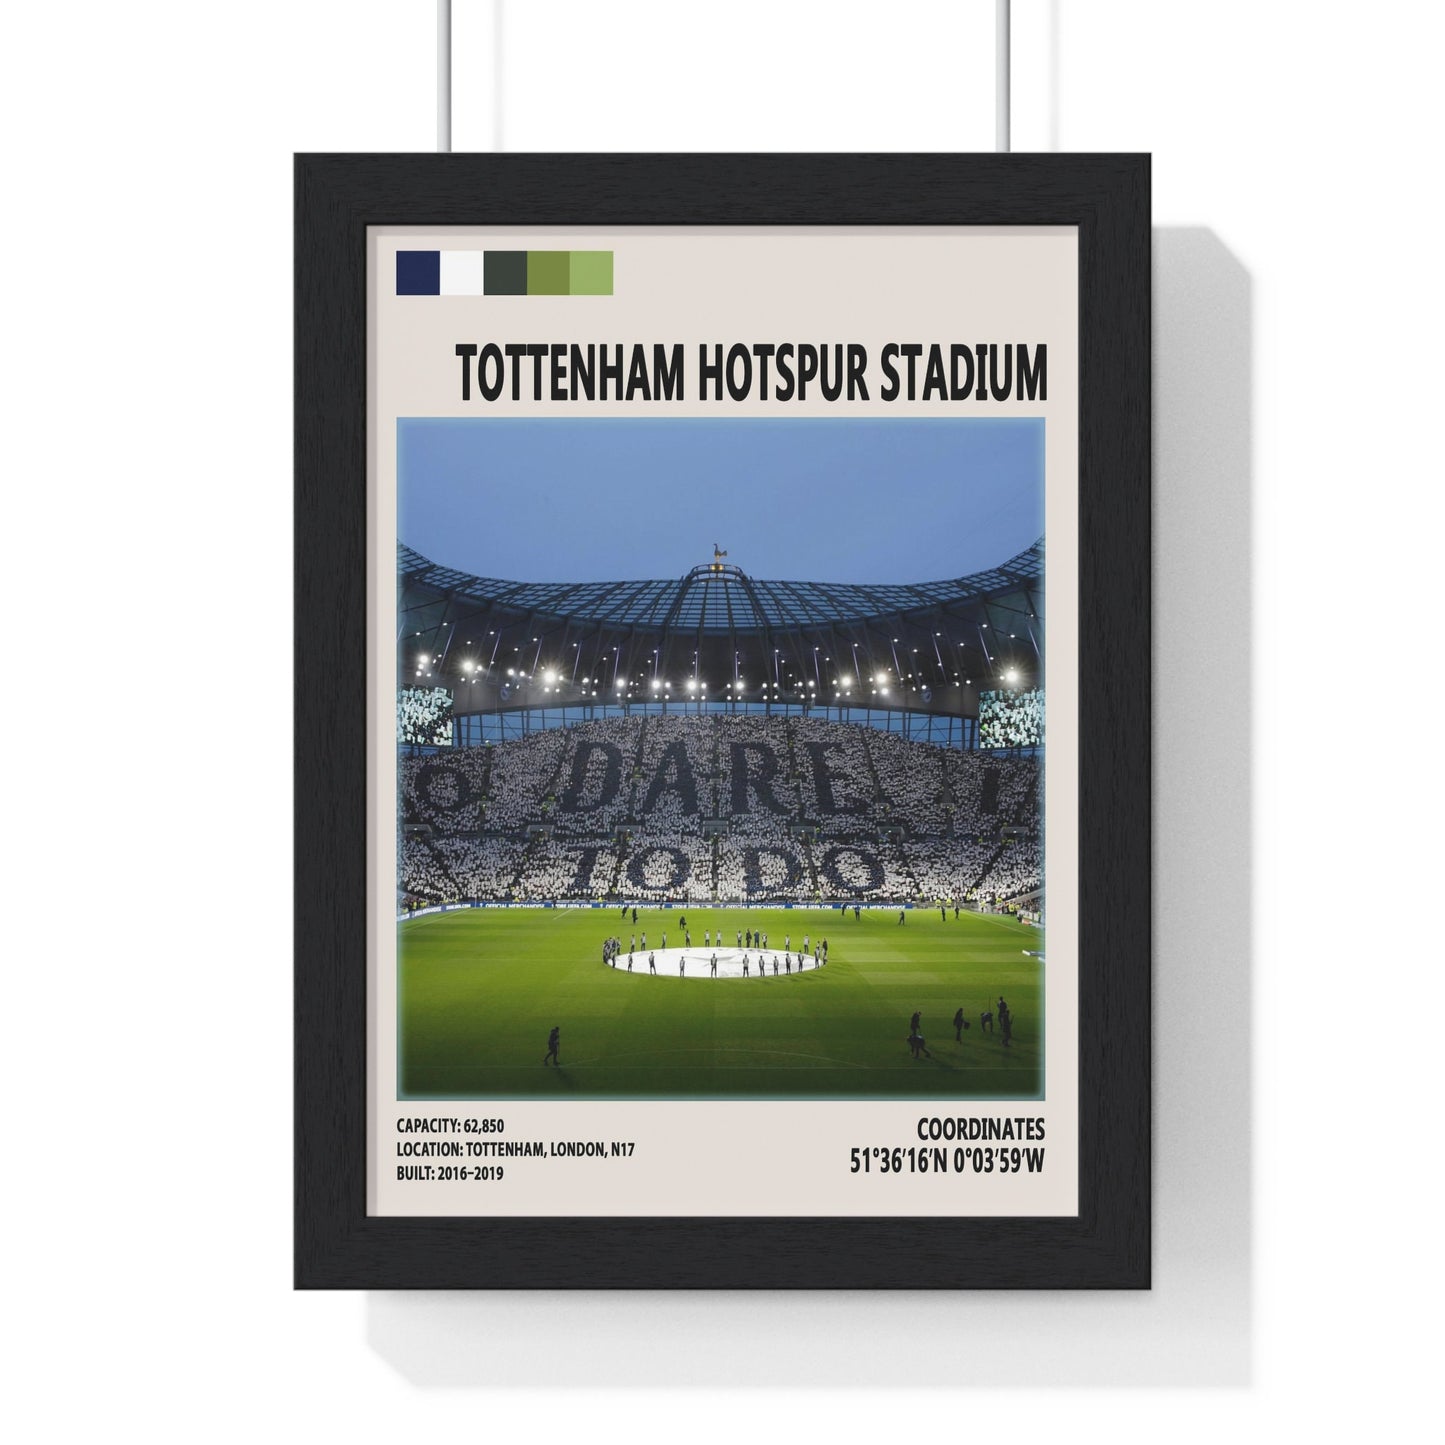 Tottenham Hotspur stadium poster